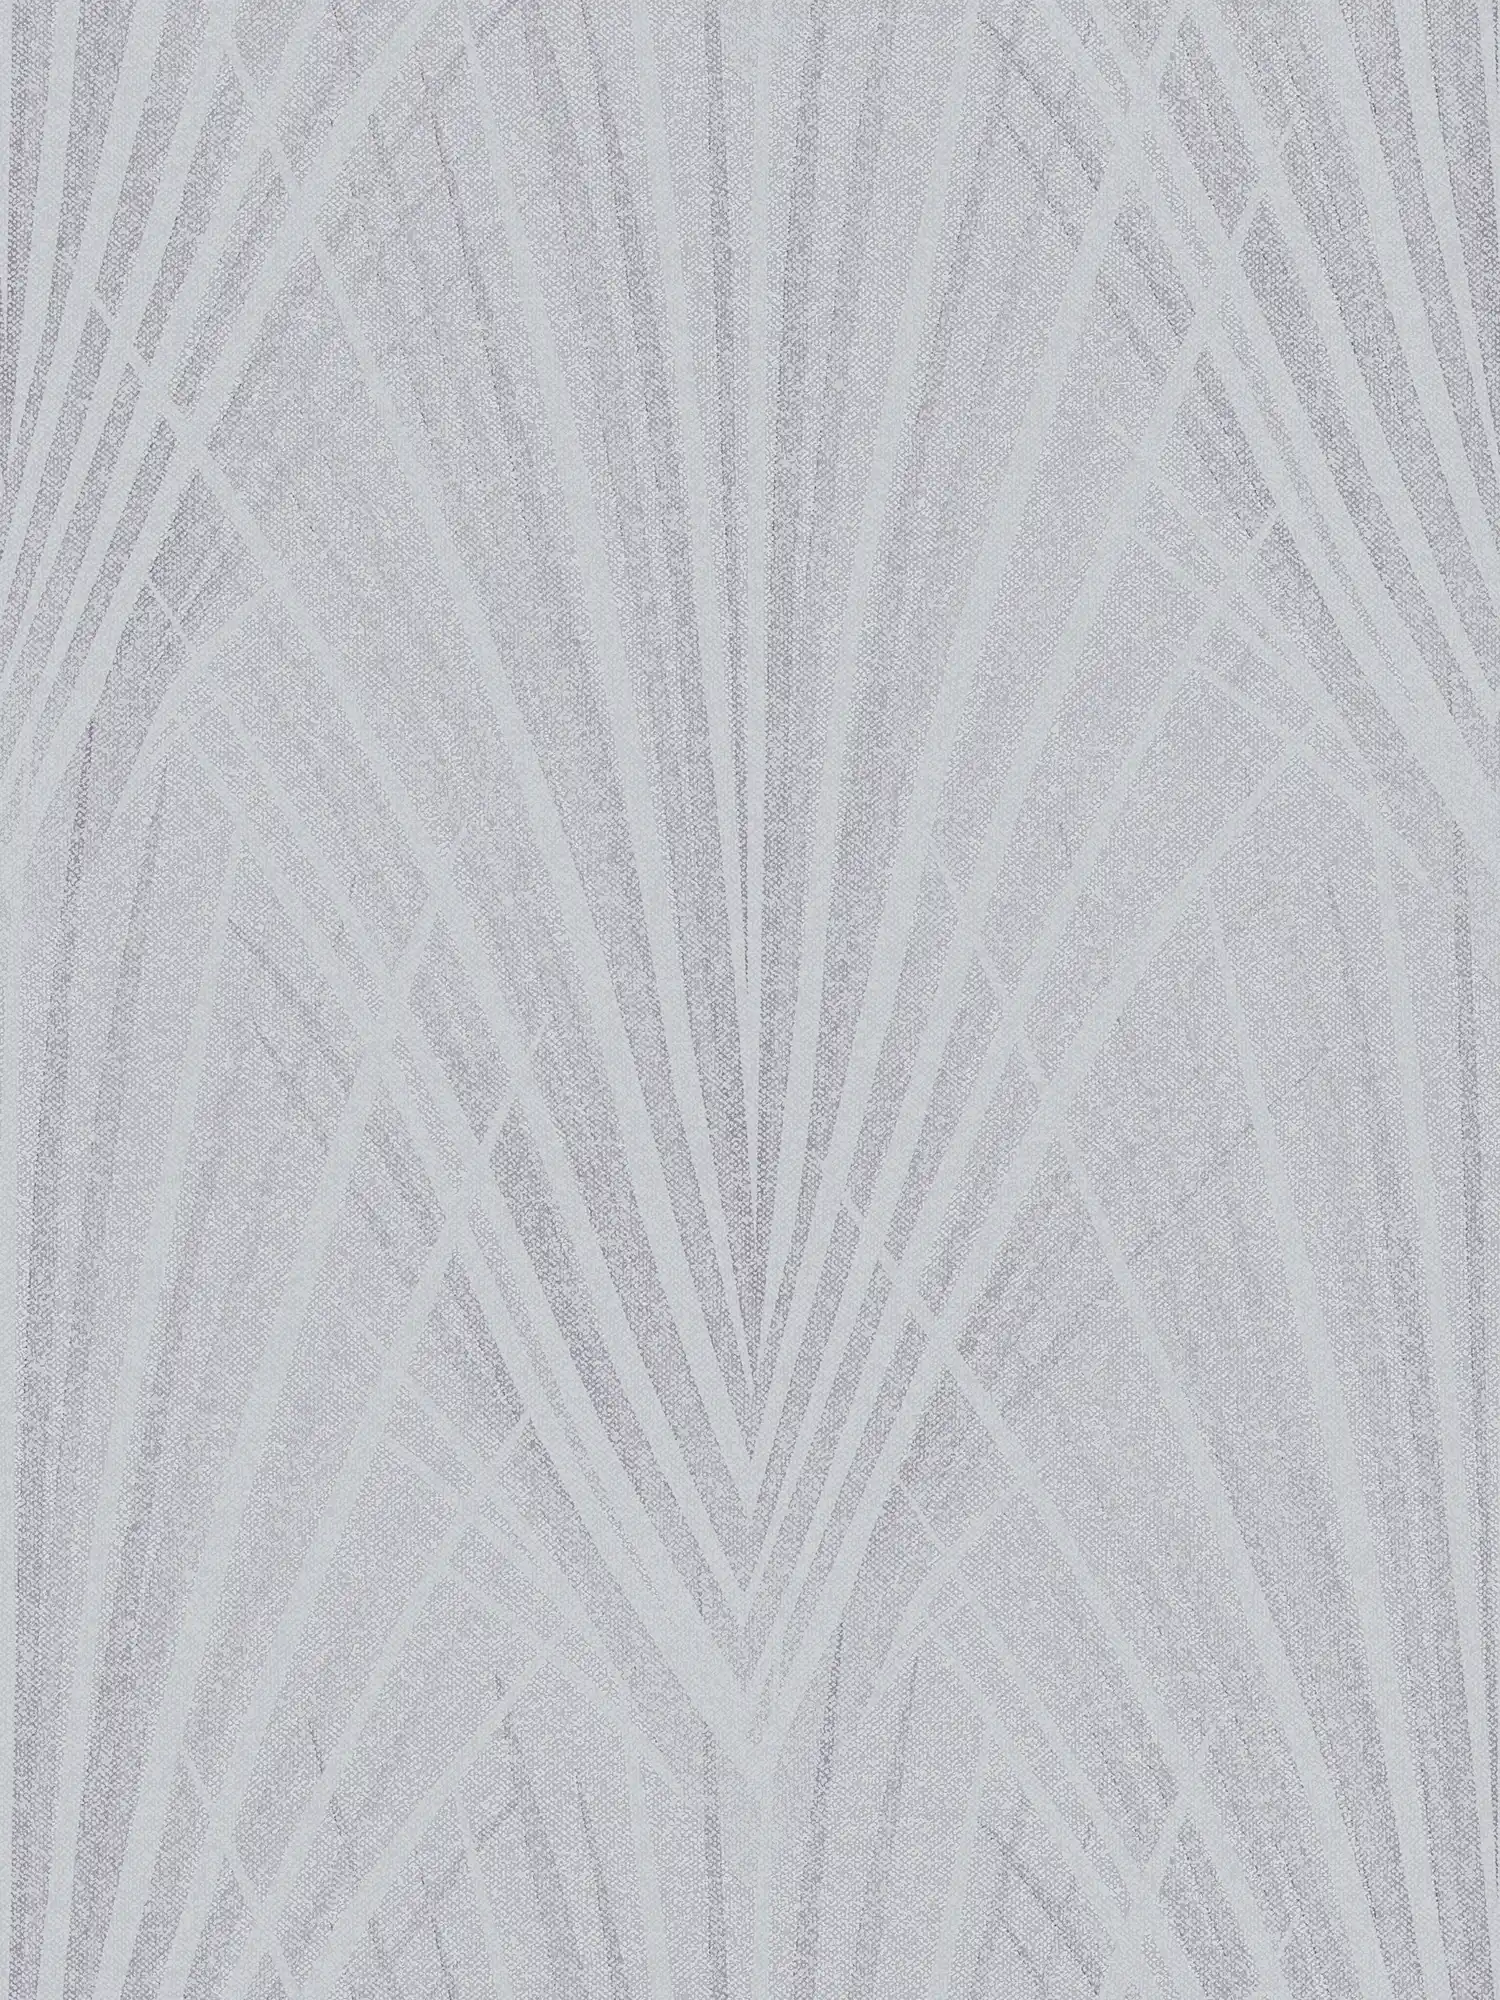 Papel pintado no tejido con motivos de hojas de helecho abstractas - azul, gris
